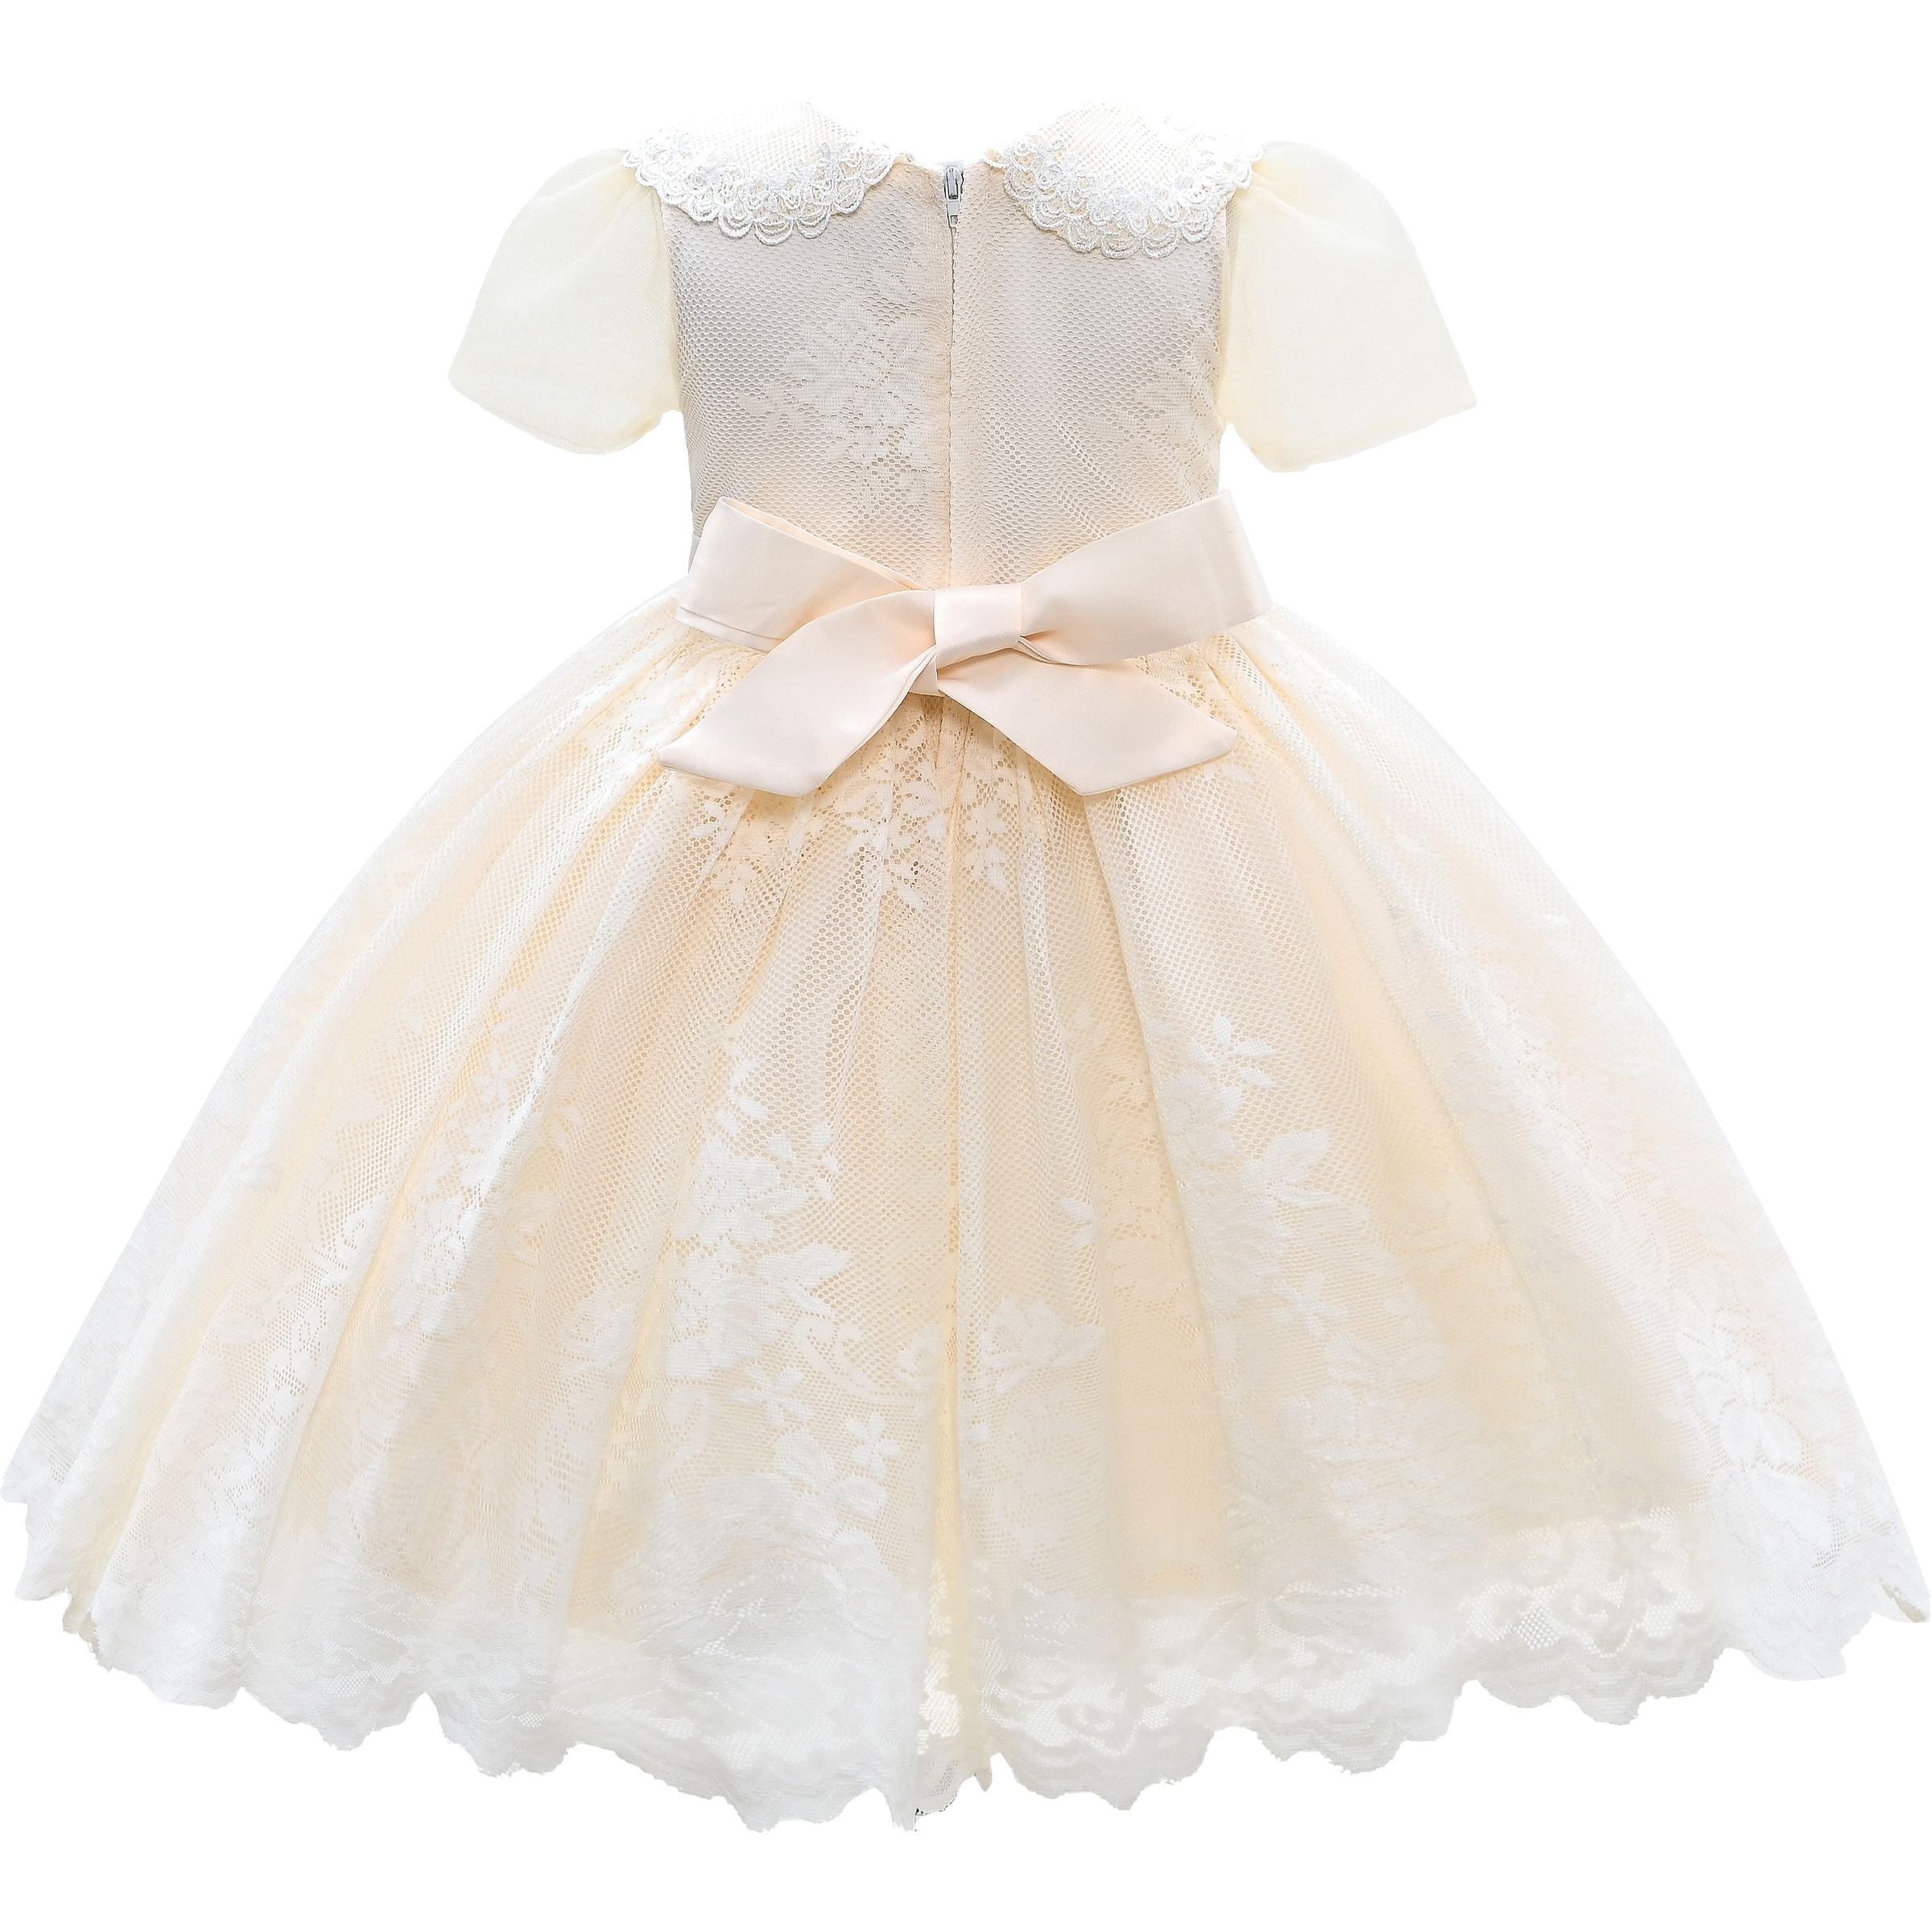 kids-atelier-tulleen-kid-girl-ivory-white-dolly-embroidered-dress-tt157-165-ivory